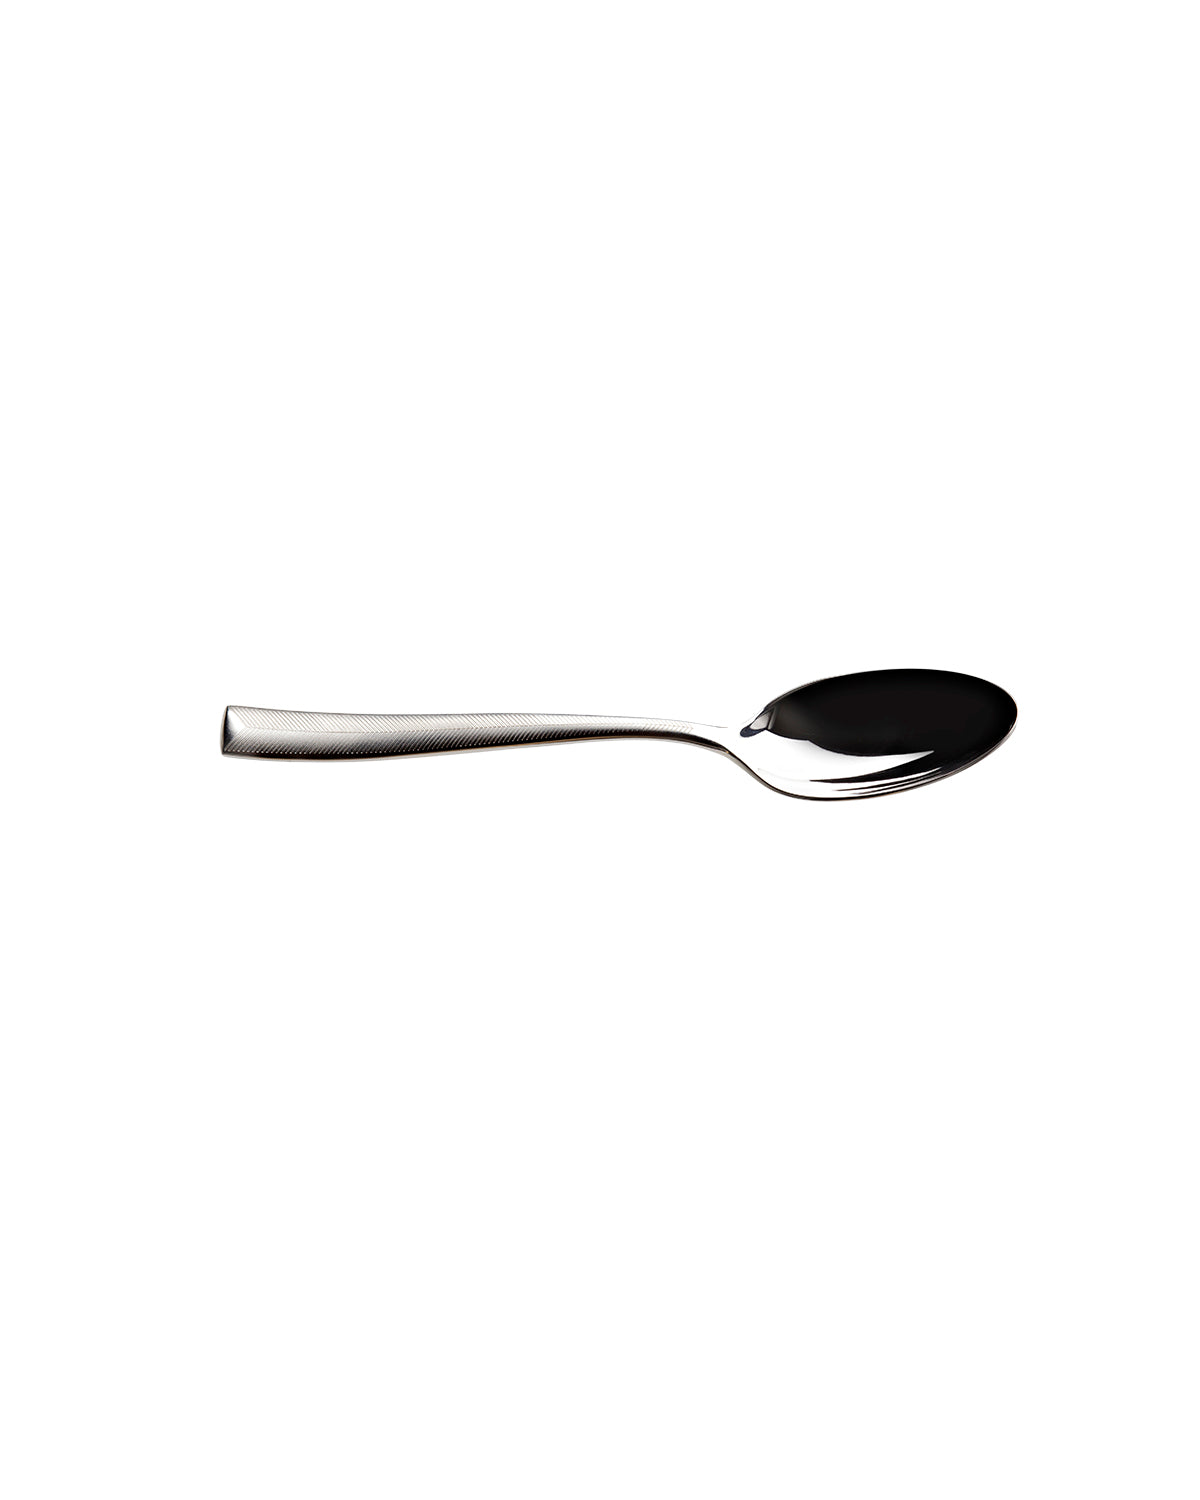 Tea Spoons ZIG ZAG Set of 6  Steel L 5.75"